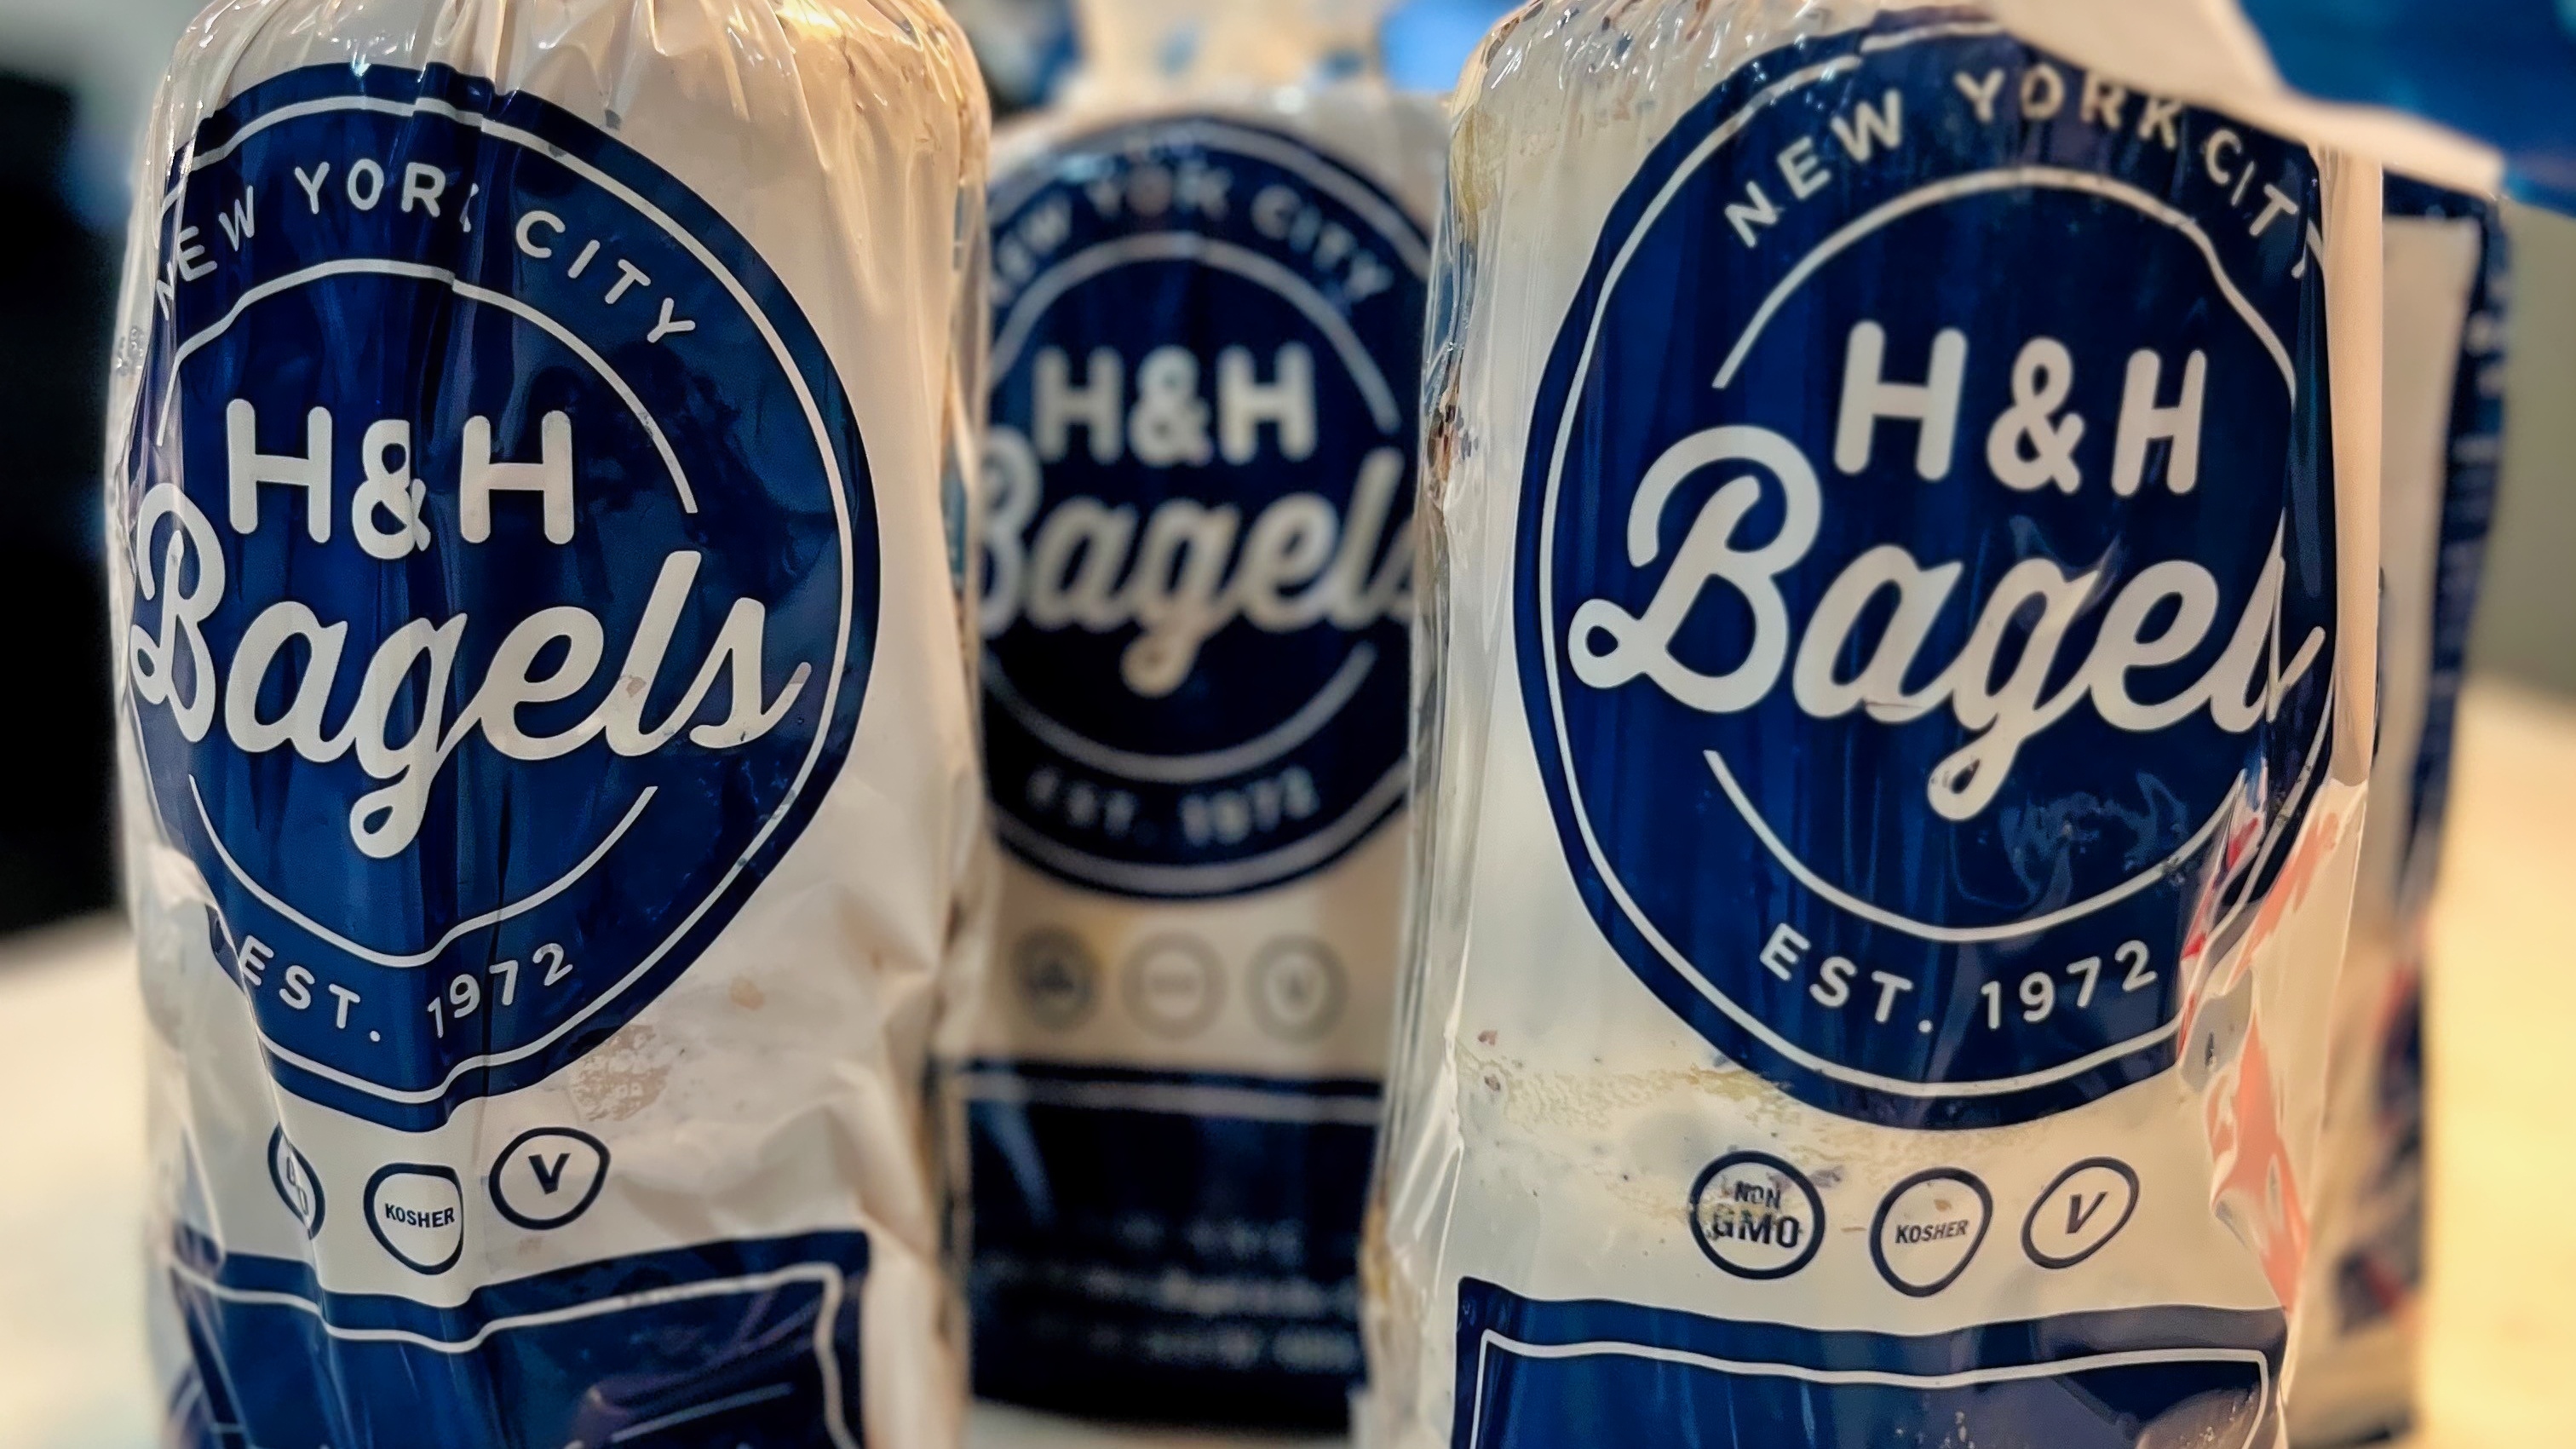 H&H bagels new york city